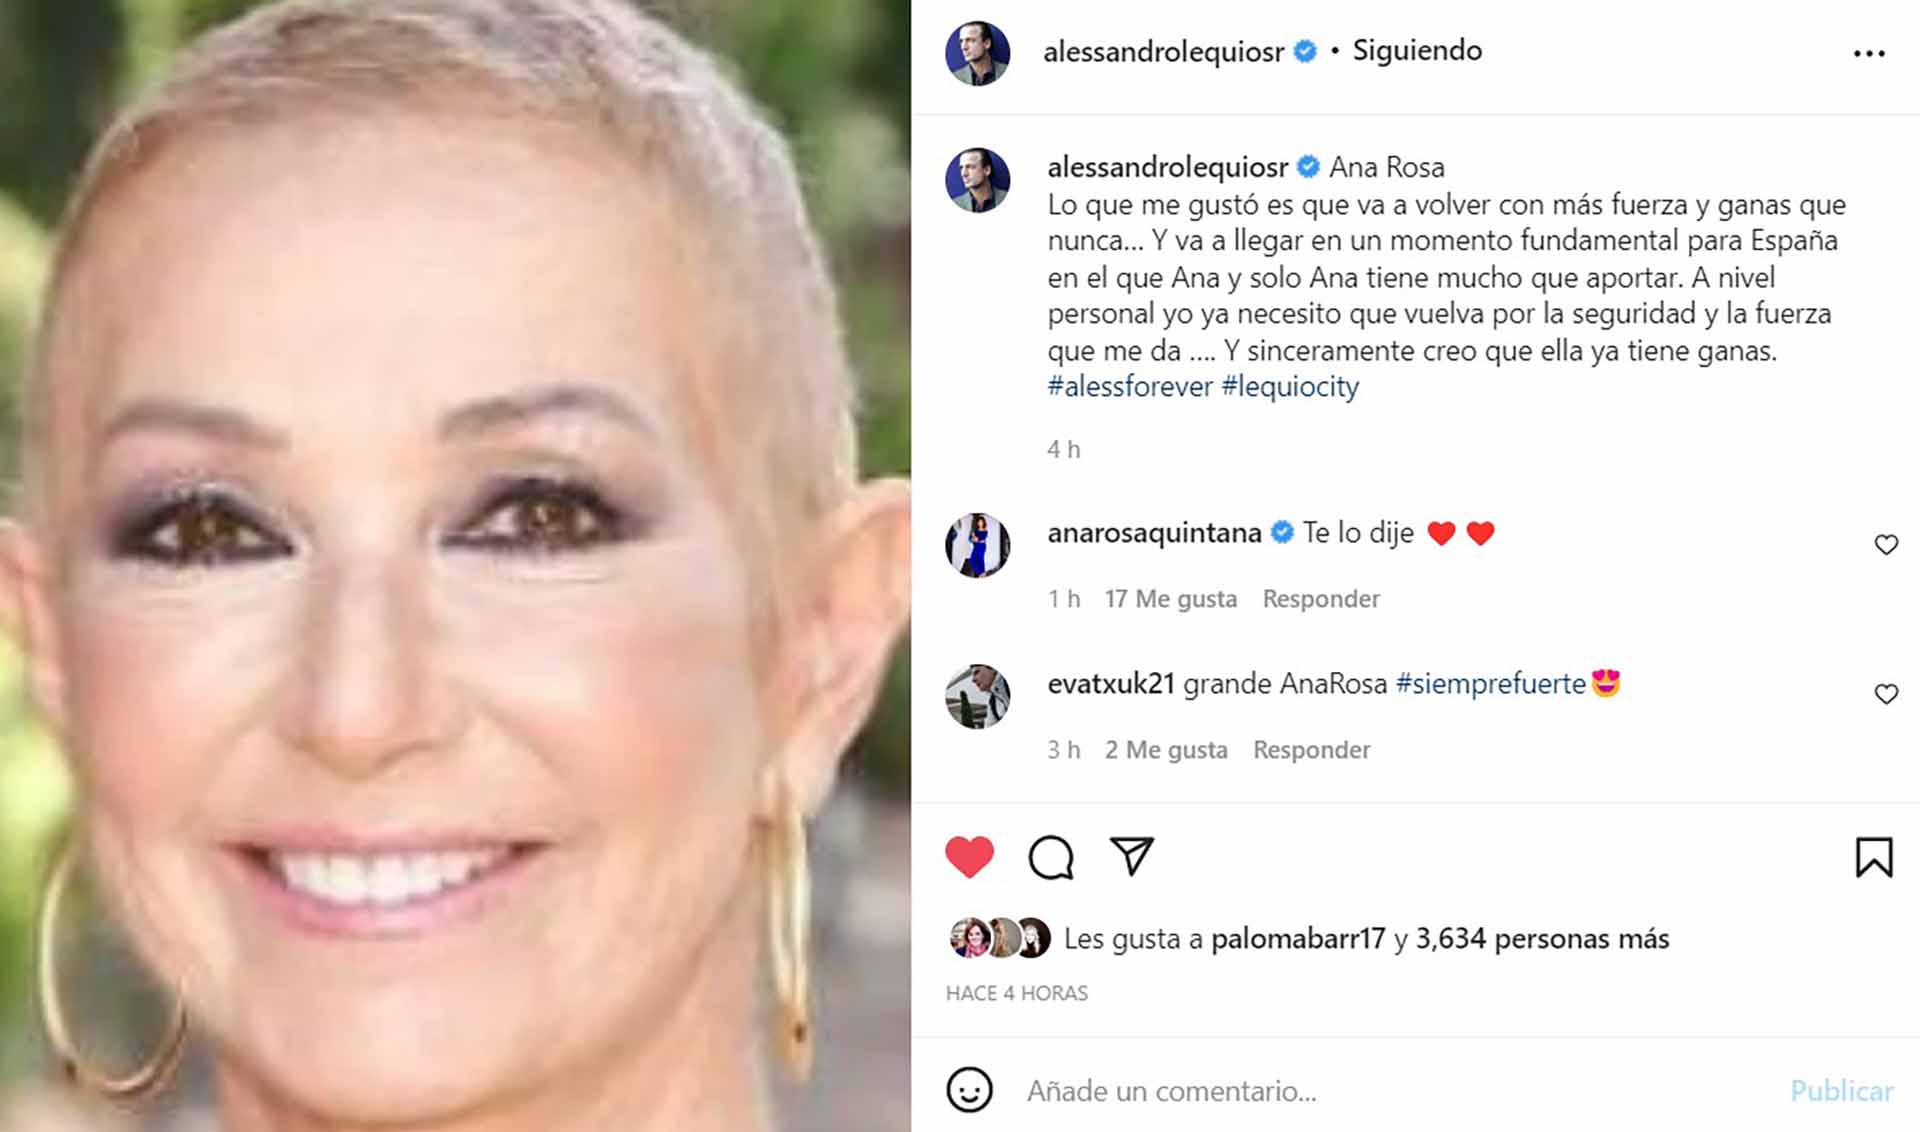 La emotiva carta de Alessandro Lequio a Ana Rosa Quintana: "Necesito que vuelva"